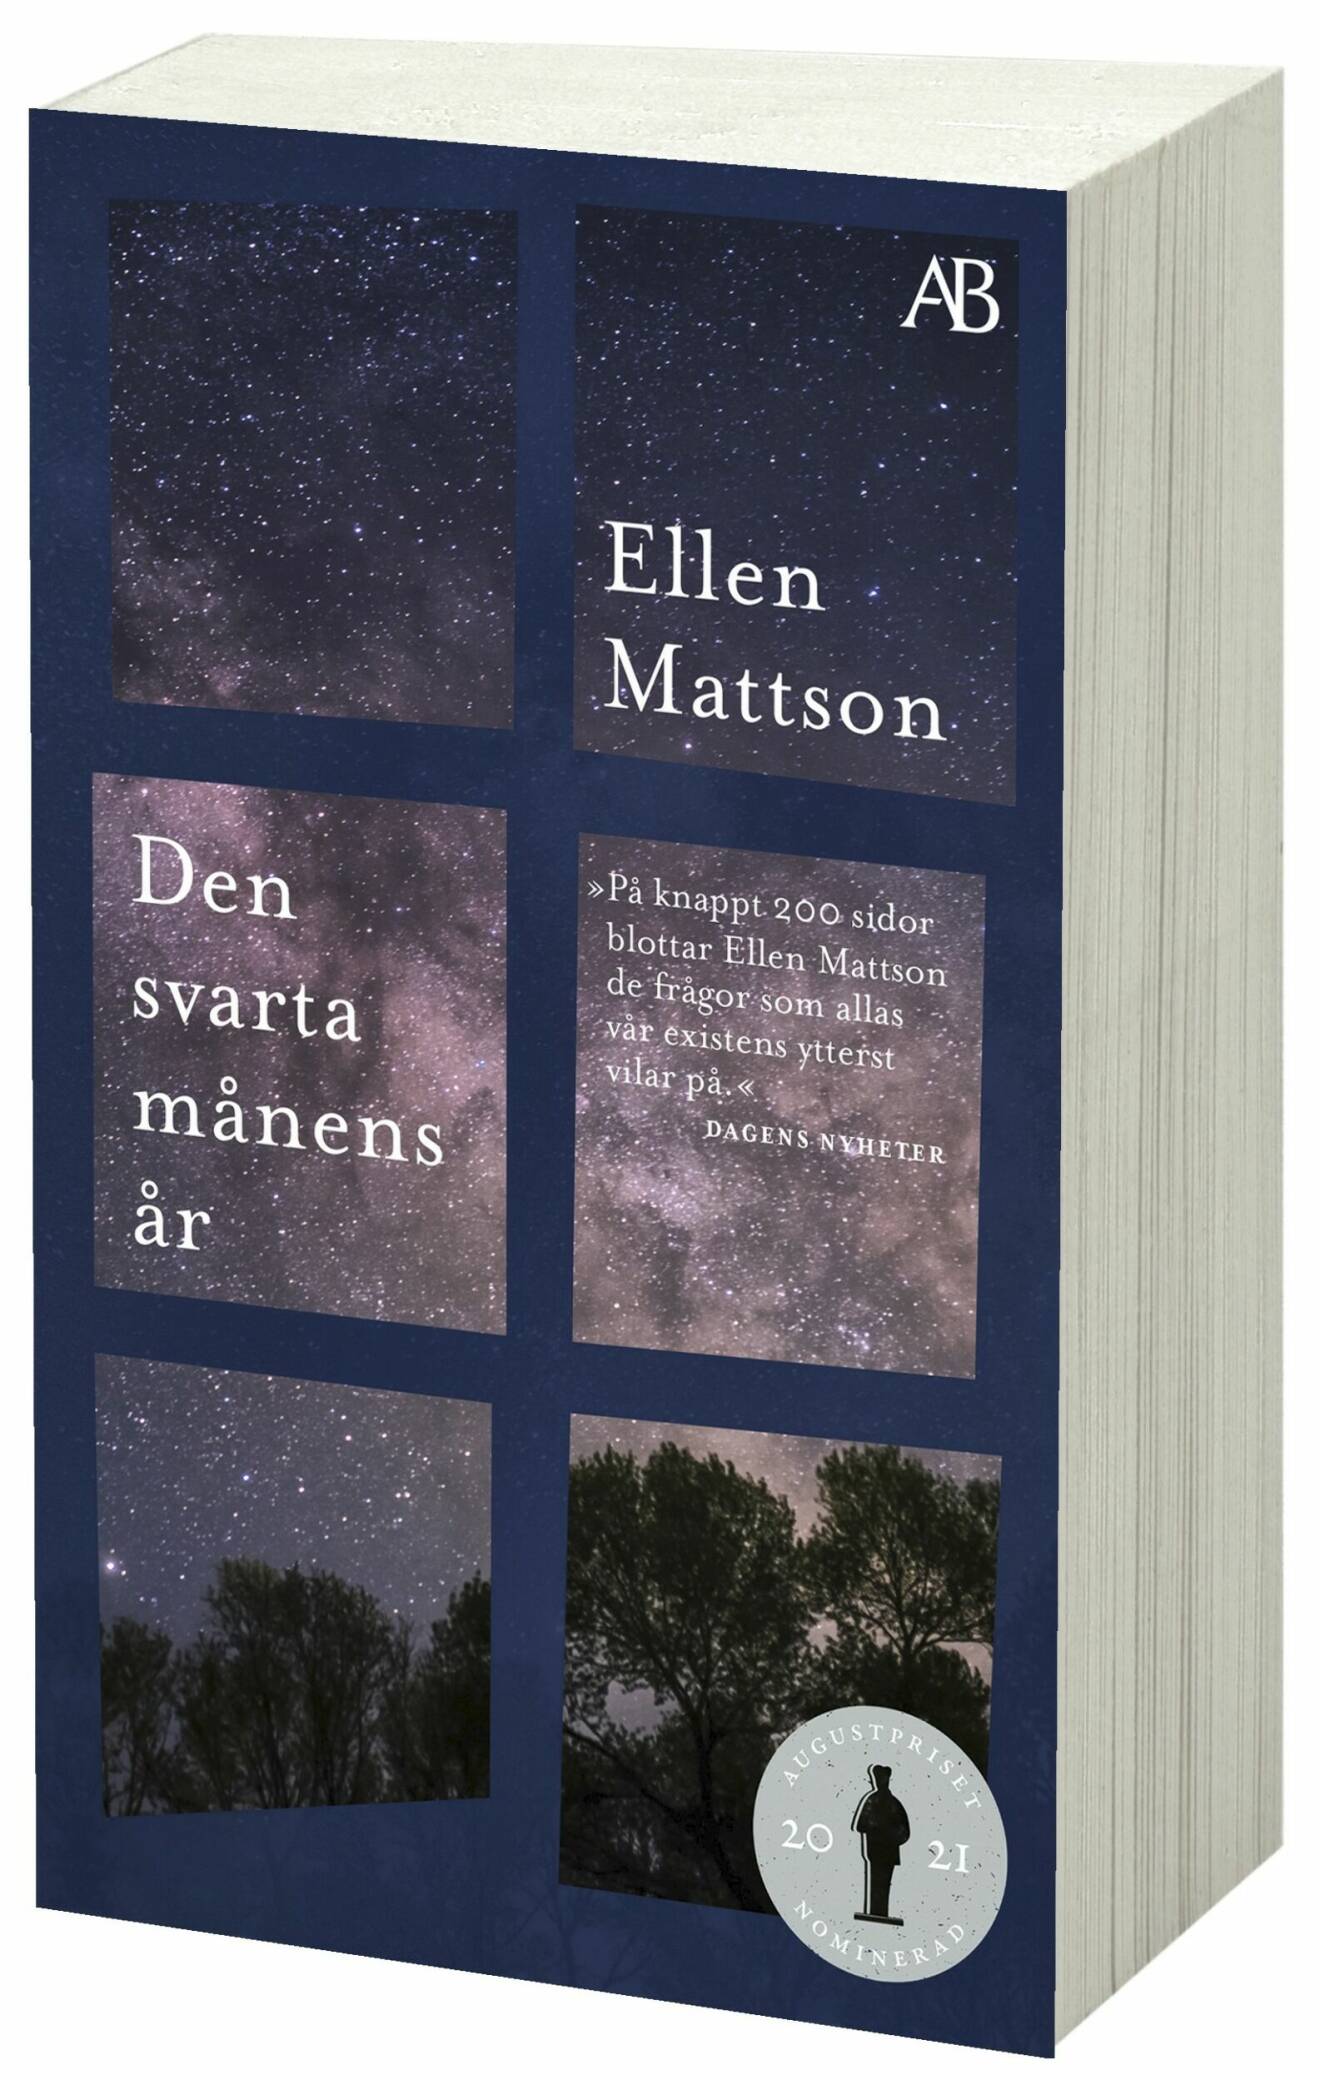 Den svarta månens år av Ellen Mattson.